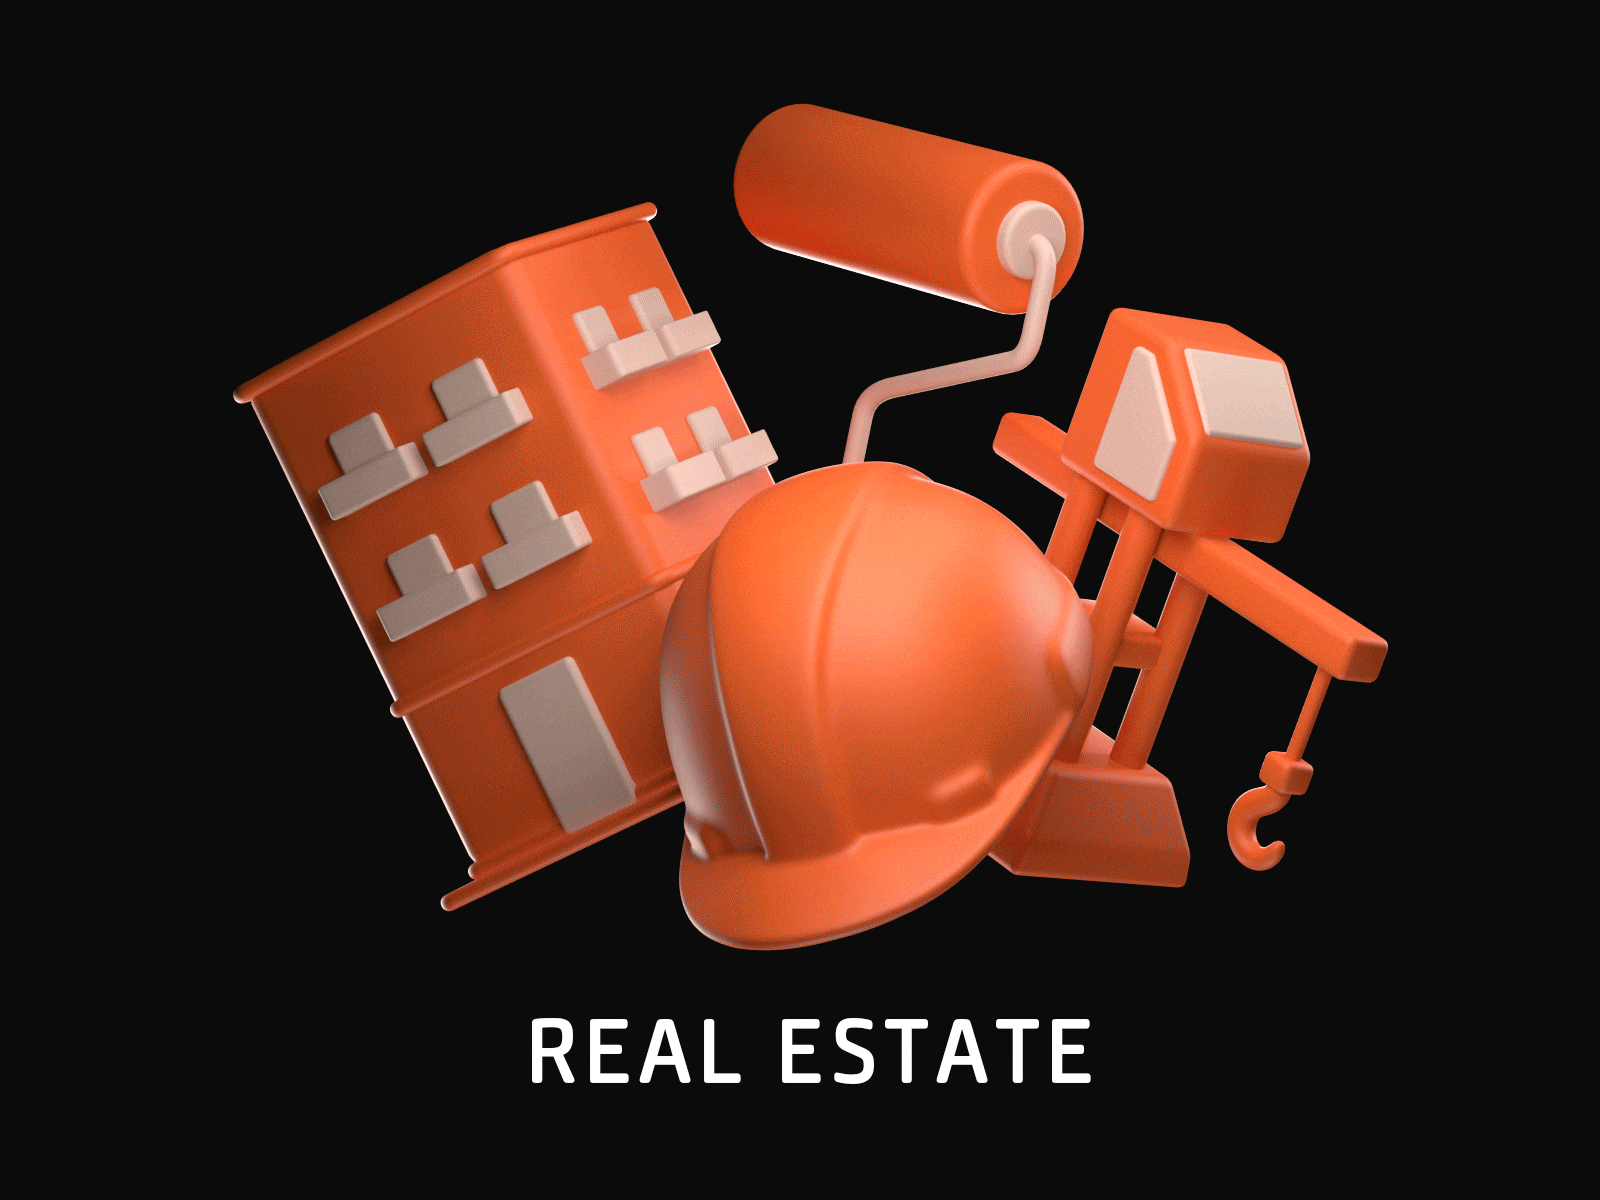 Real estate 3d 3dicon 3dillustration cinema4d design icon icon set illustration mortgage realestate webillustration